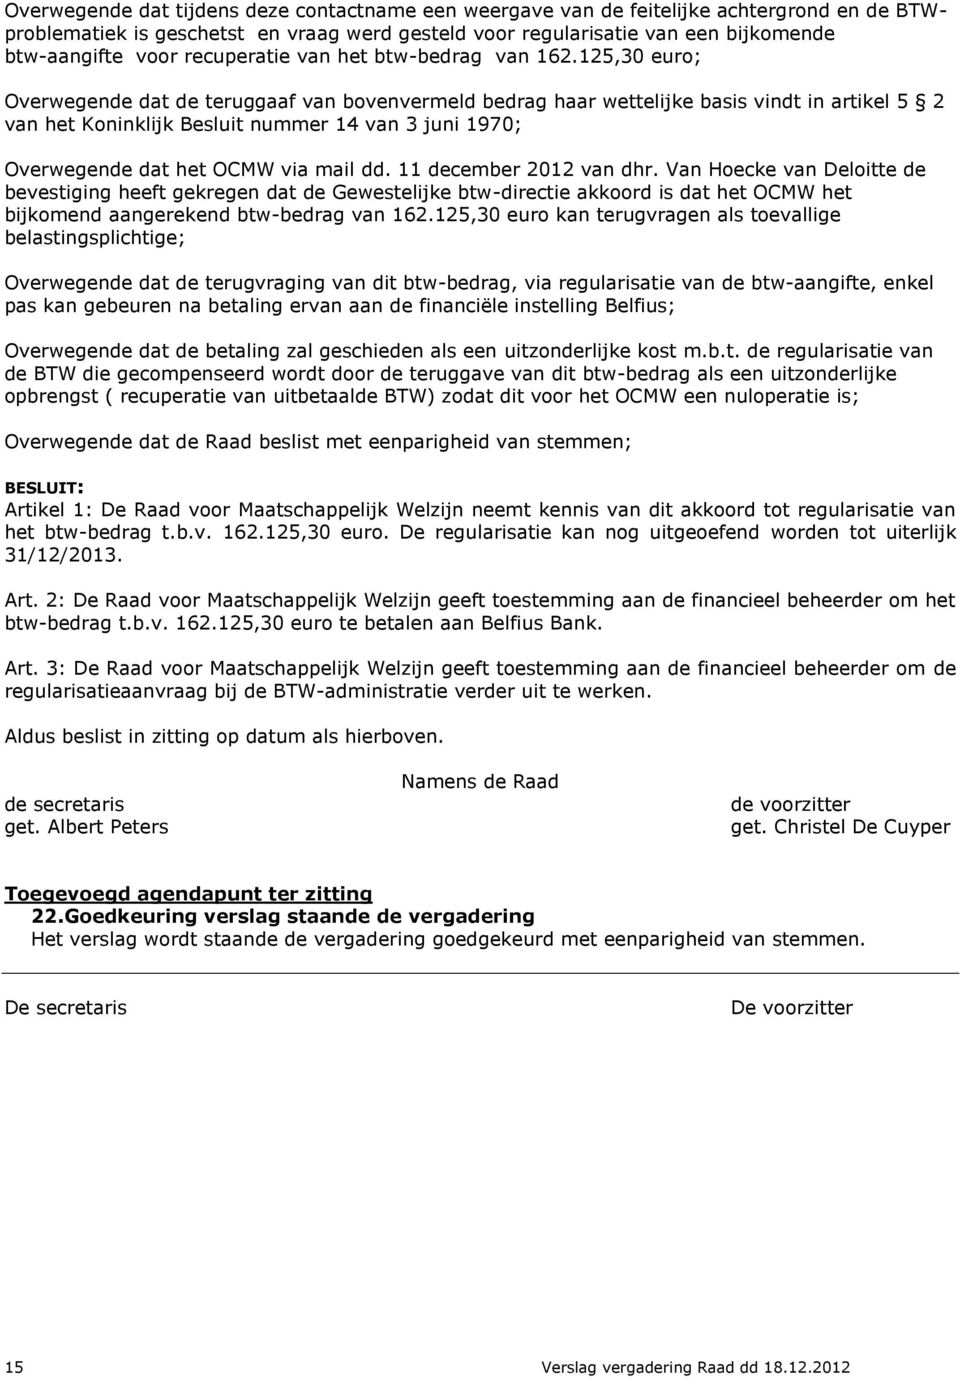 125,30 euro; Overwegende dat de teruggaaf van bovenvermeld bedrag haar wettelijke basis vindt in artikel 5 2 van het Koninklijk Besluit nummer 14 van 3 juni 1970; Overwegende dat het OCMW via mail dd.